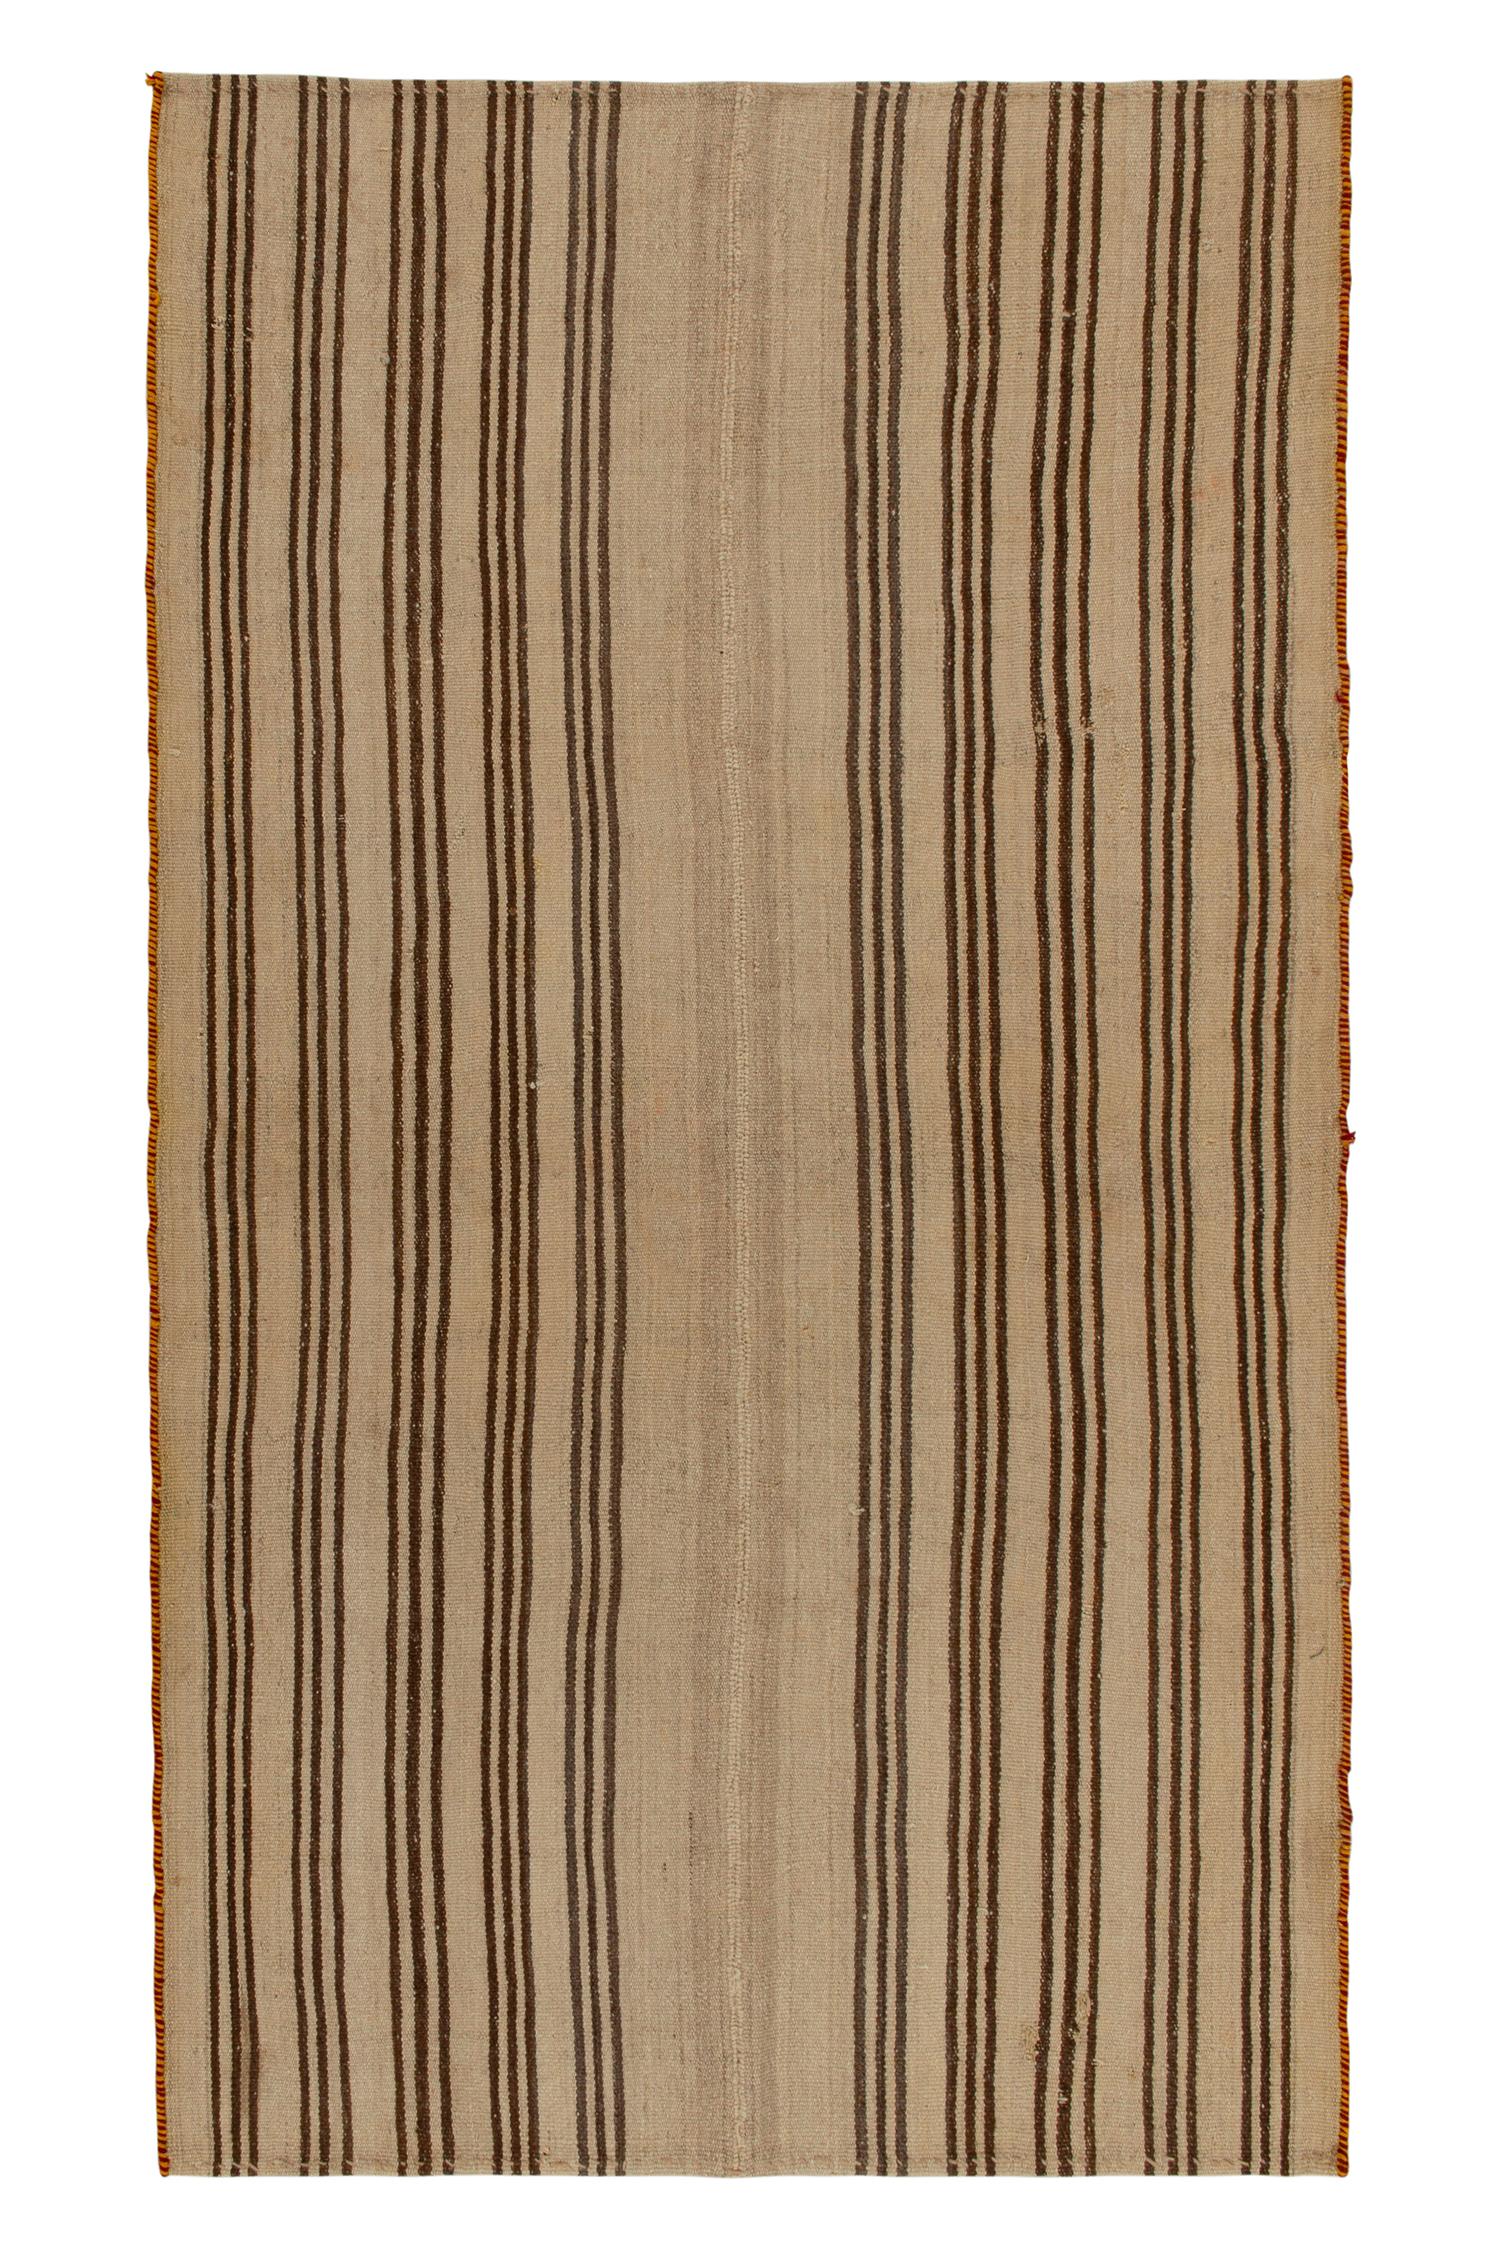 Teppich aus Vintage-Kelim mit beige-braunen Streifenmustern, getäfelt von Teppich & Kelim